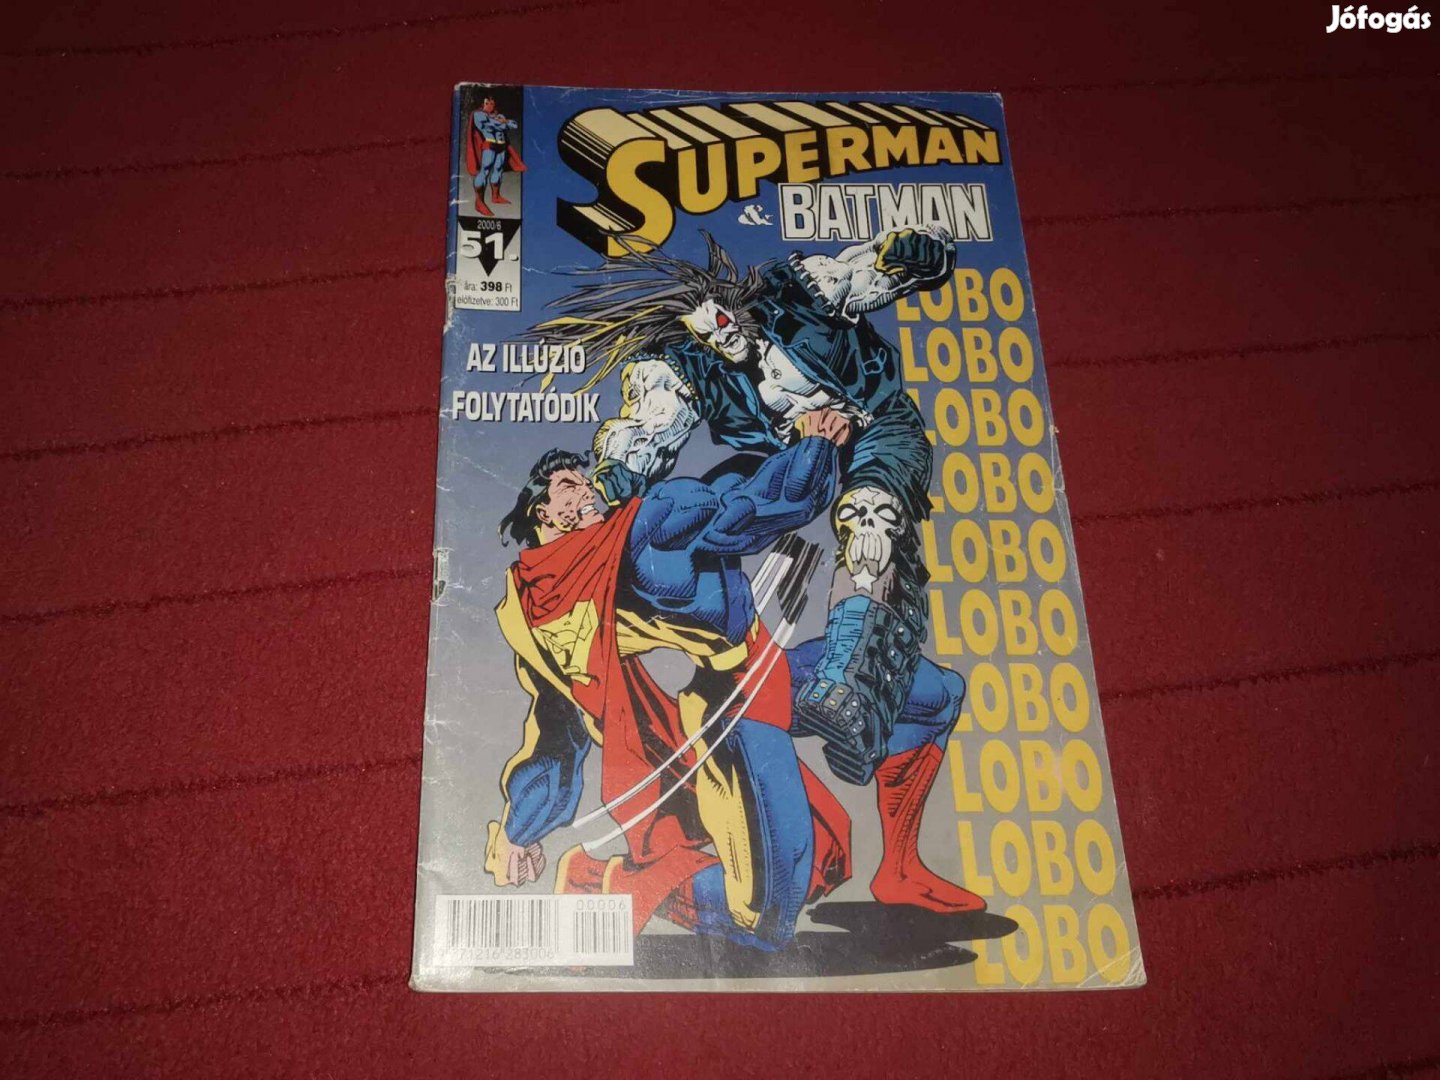 Superman&Batman 51